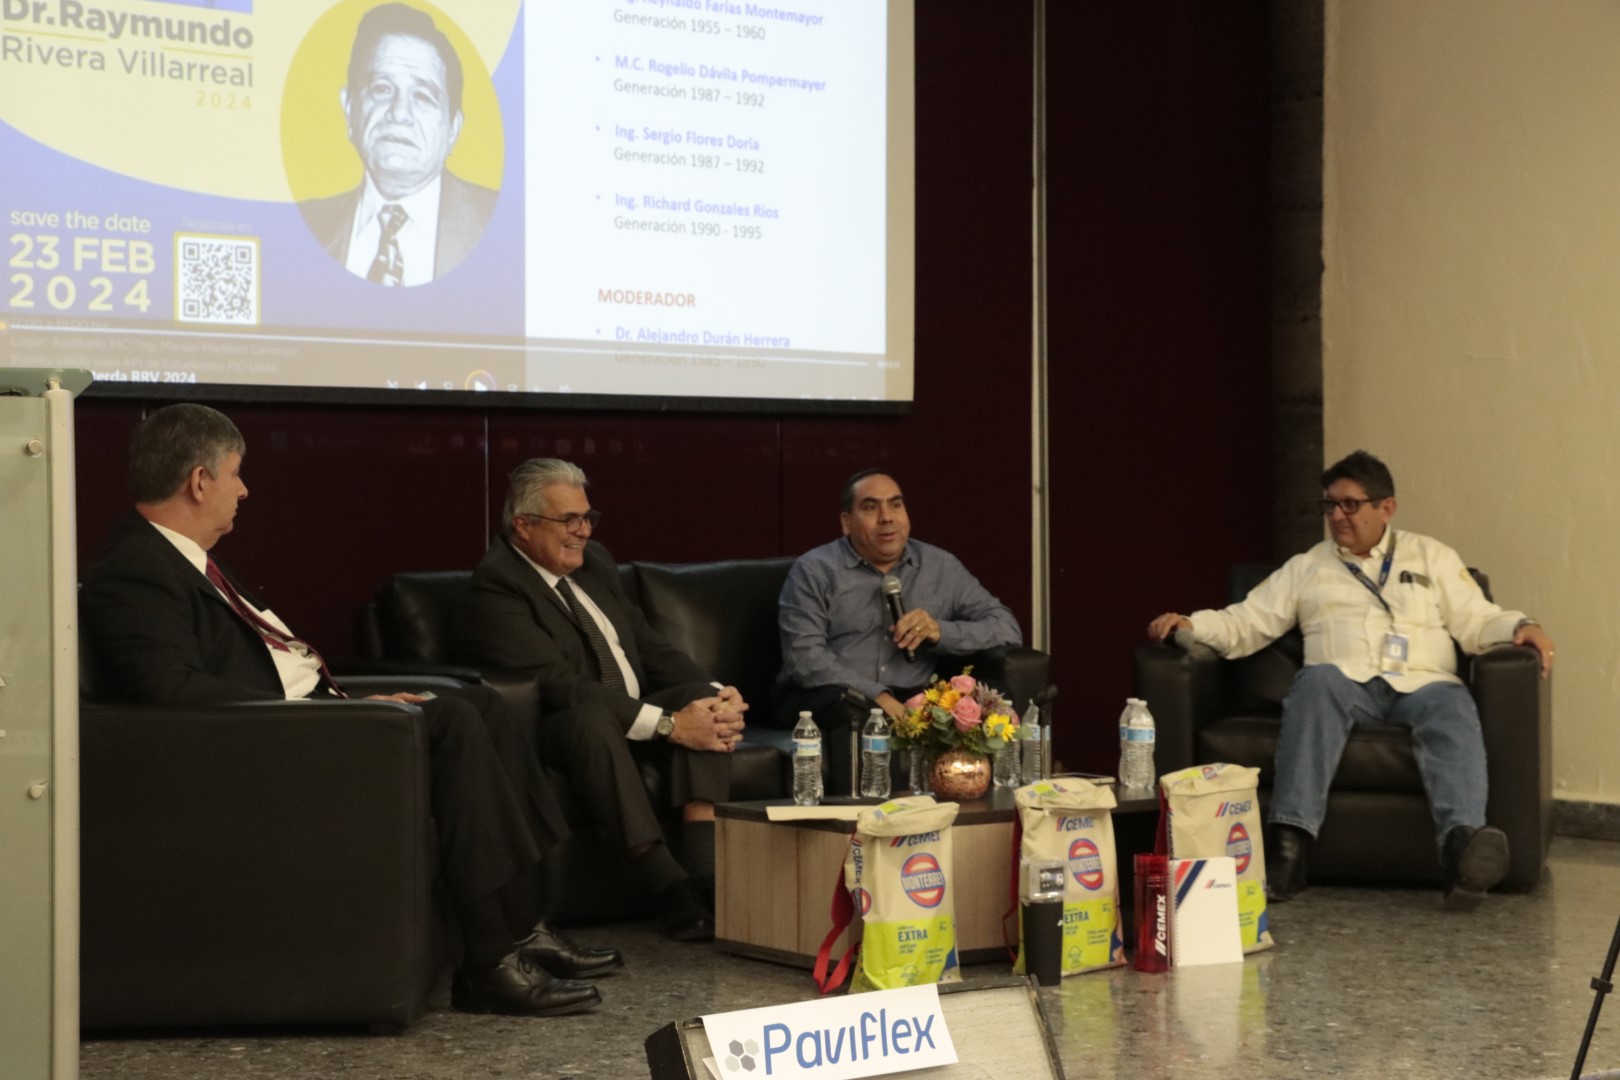 Exitosa Cuarta Cátedra Dr. Raymundo Rivera Villarreal: Un Homenaje a su Legado en la Tecnología del Concreto